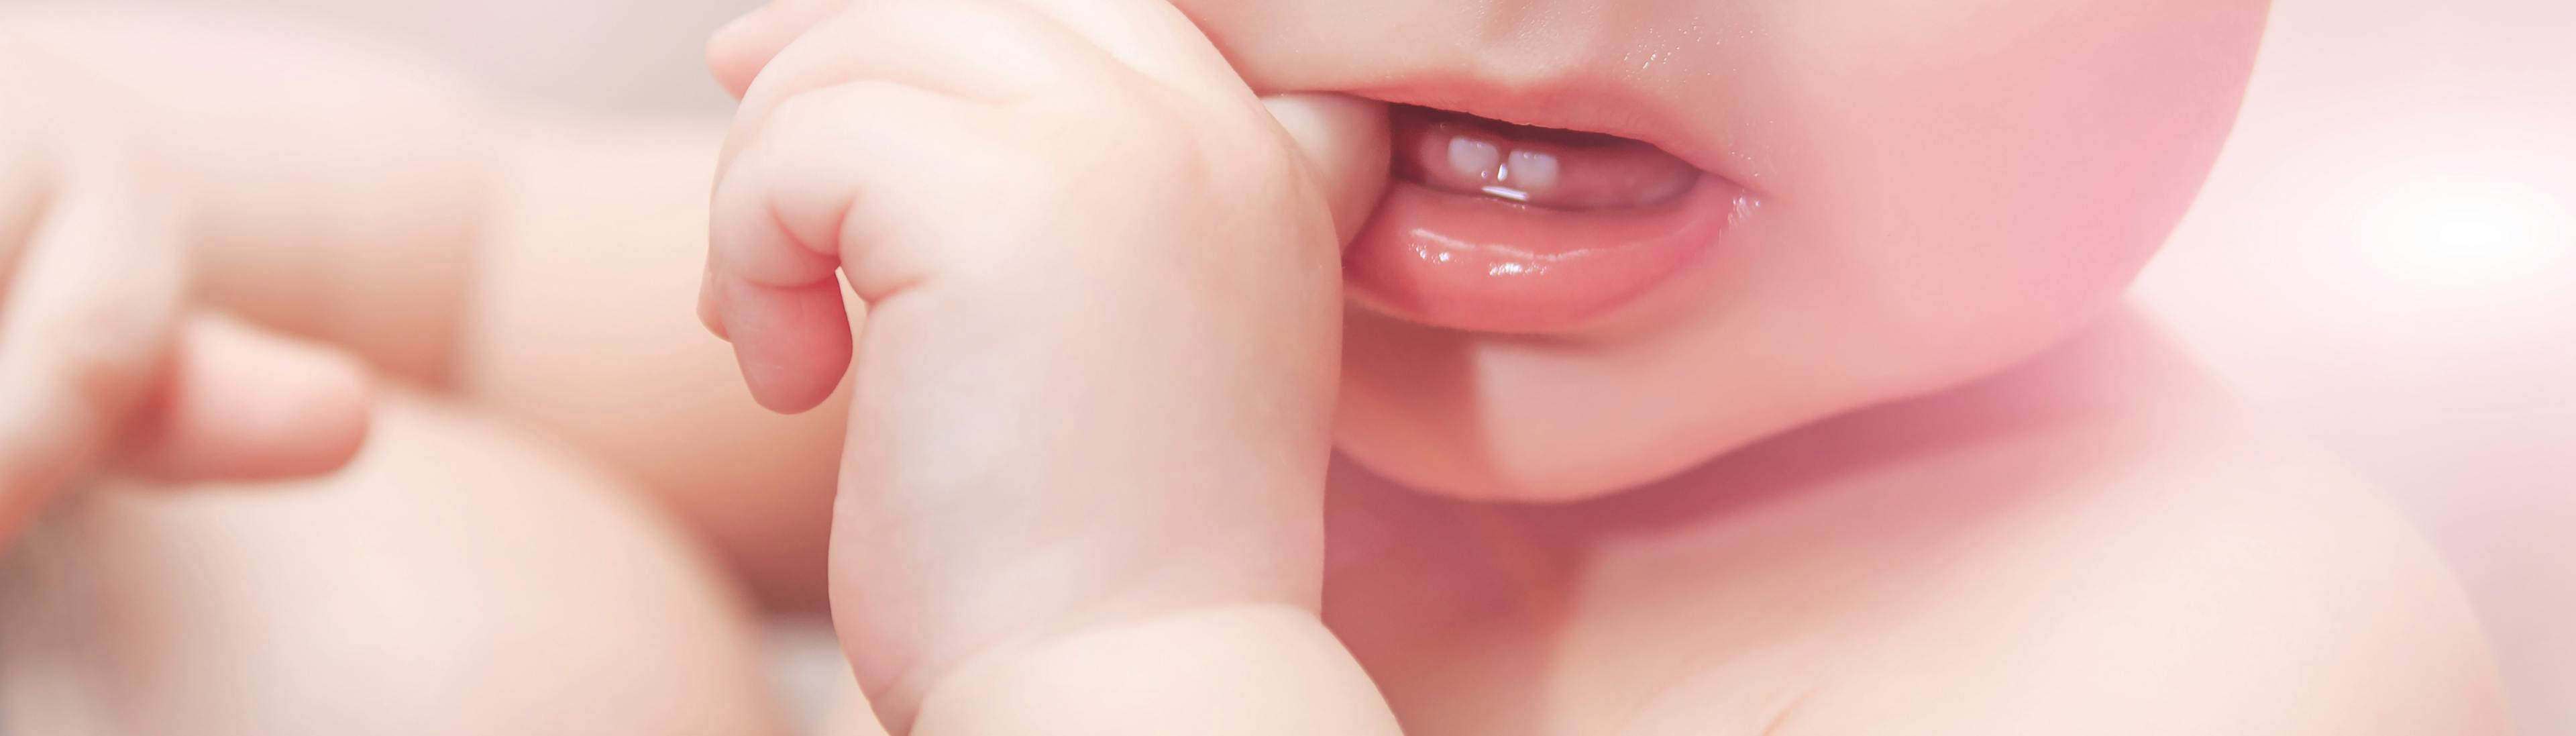 Bébé grognon, joues et fesses rouges, c'est la poussée dentaire?